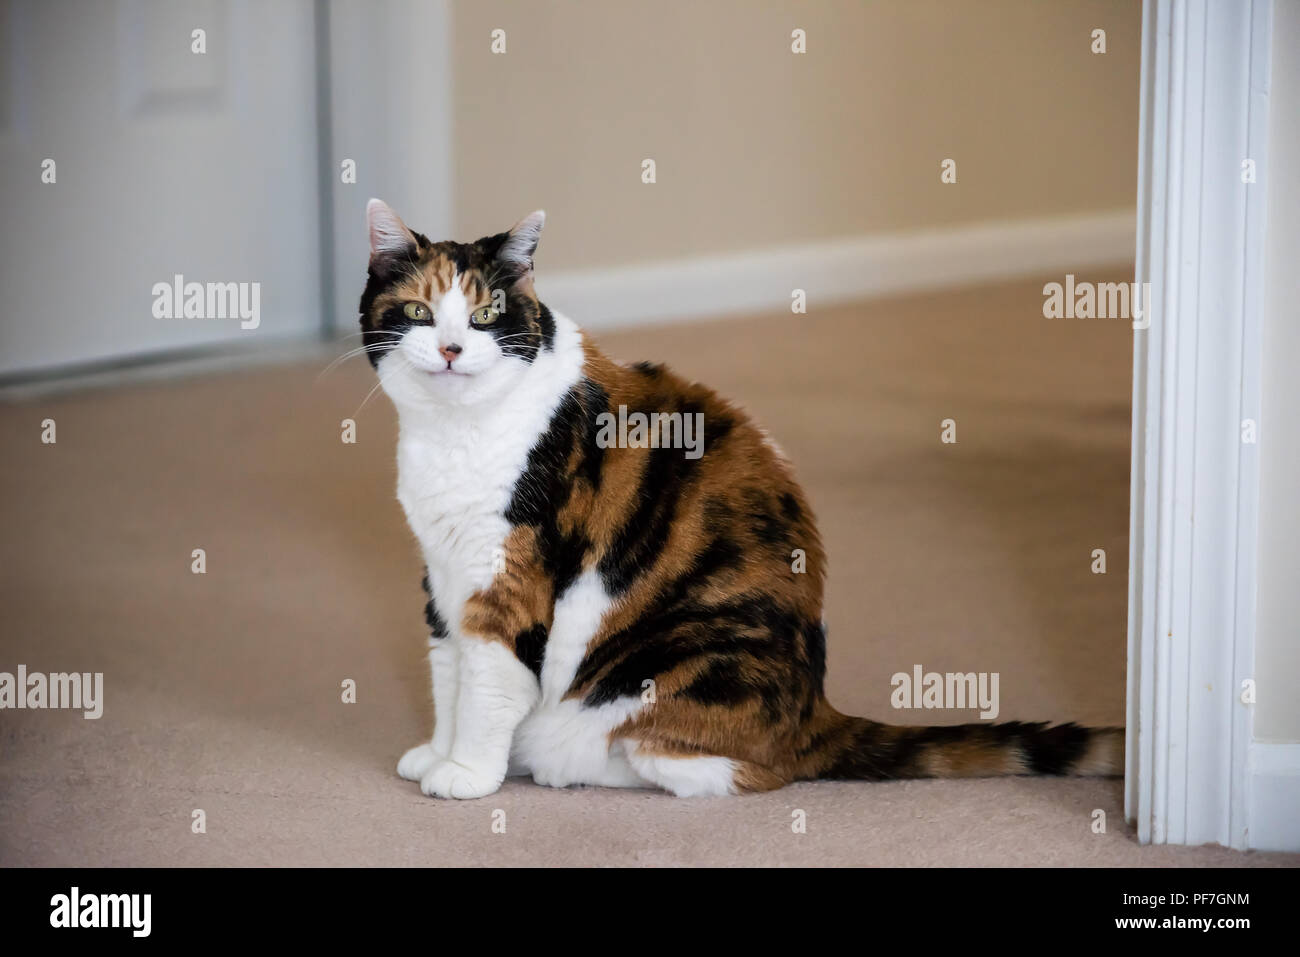 Lustig niedlich Ausdruck Gesicht Frauen Calico Katze sitzt auf dem Teppich im Haus Zimmer im Haus, grüne Augen lächelnden Mund lustig Meme Stockfoto